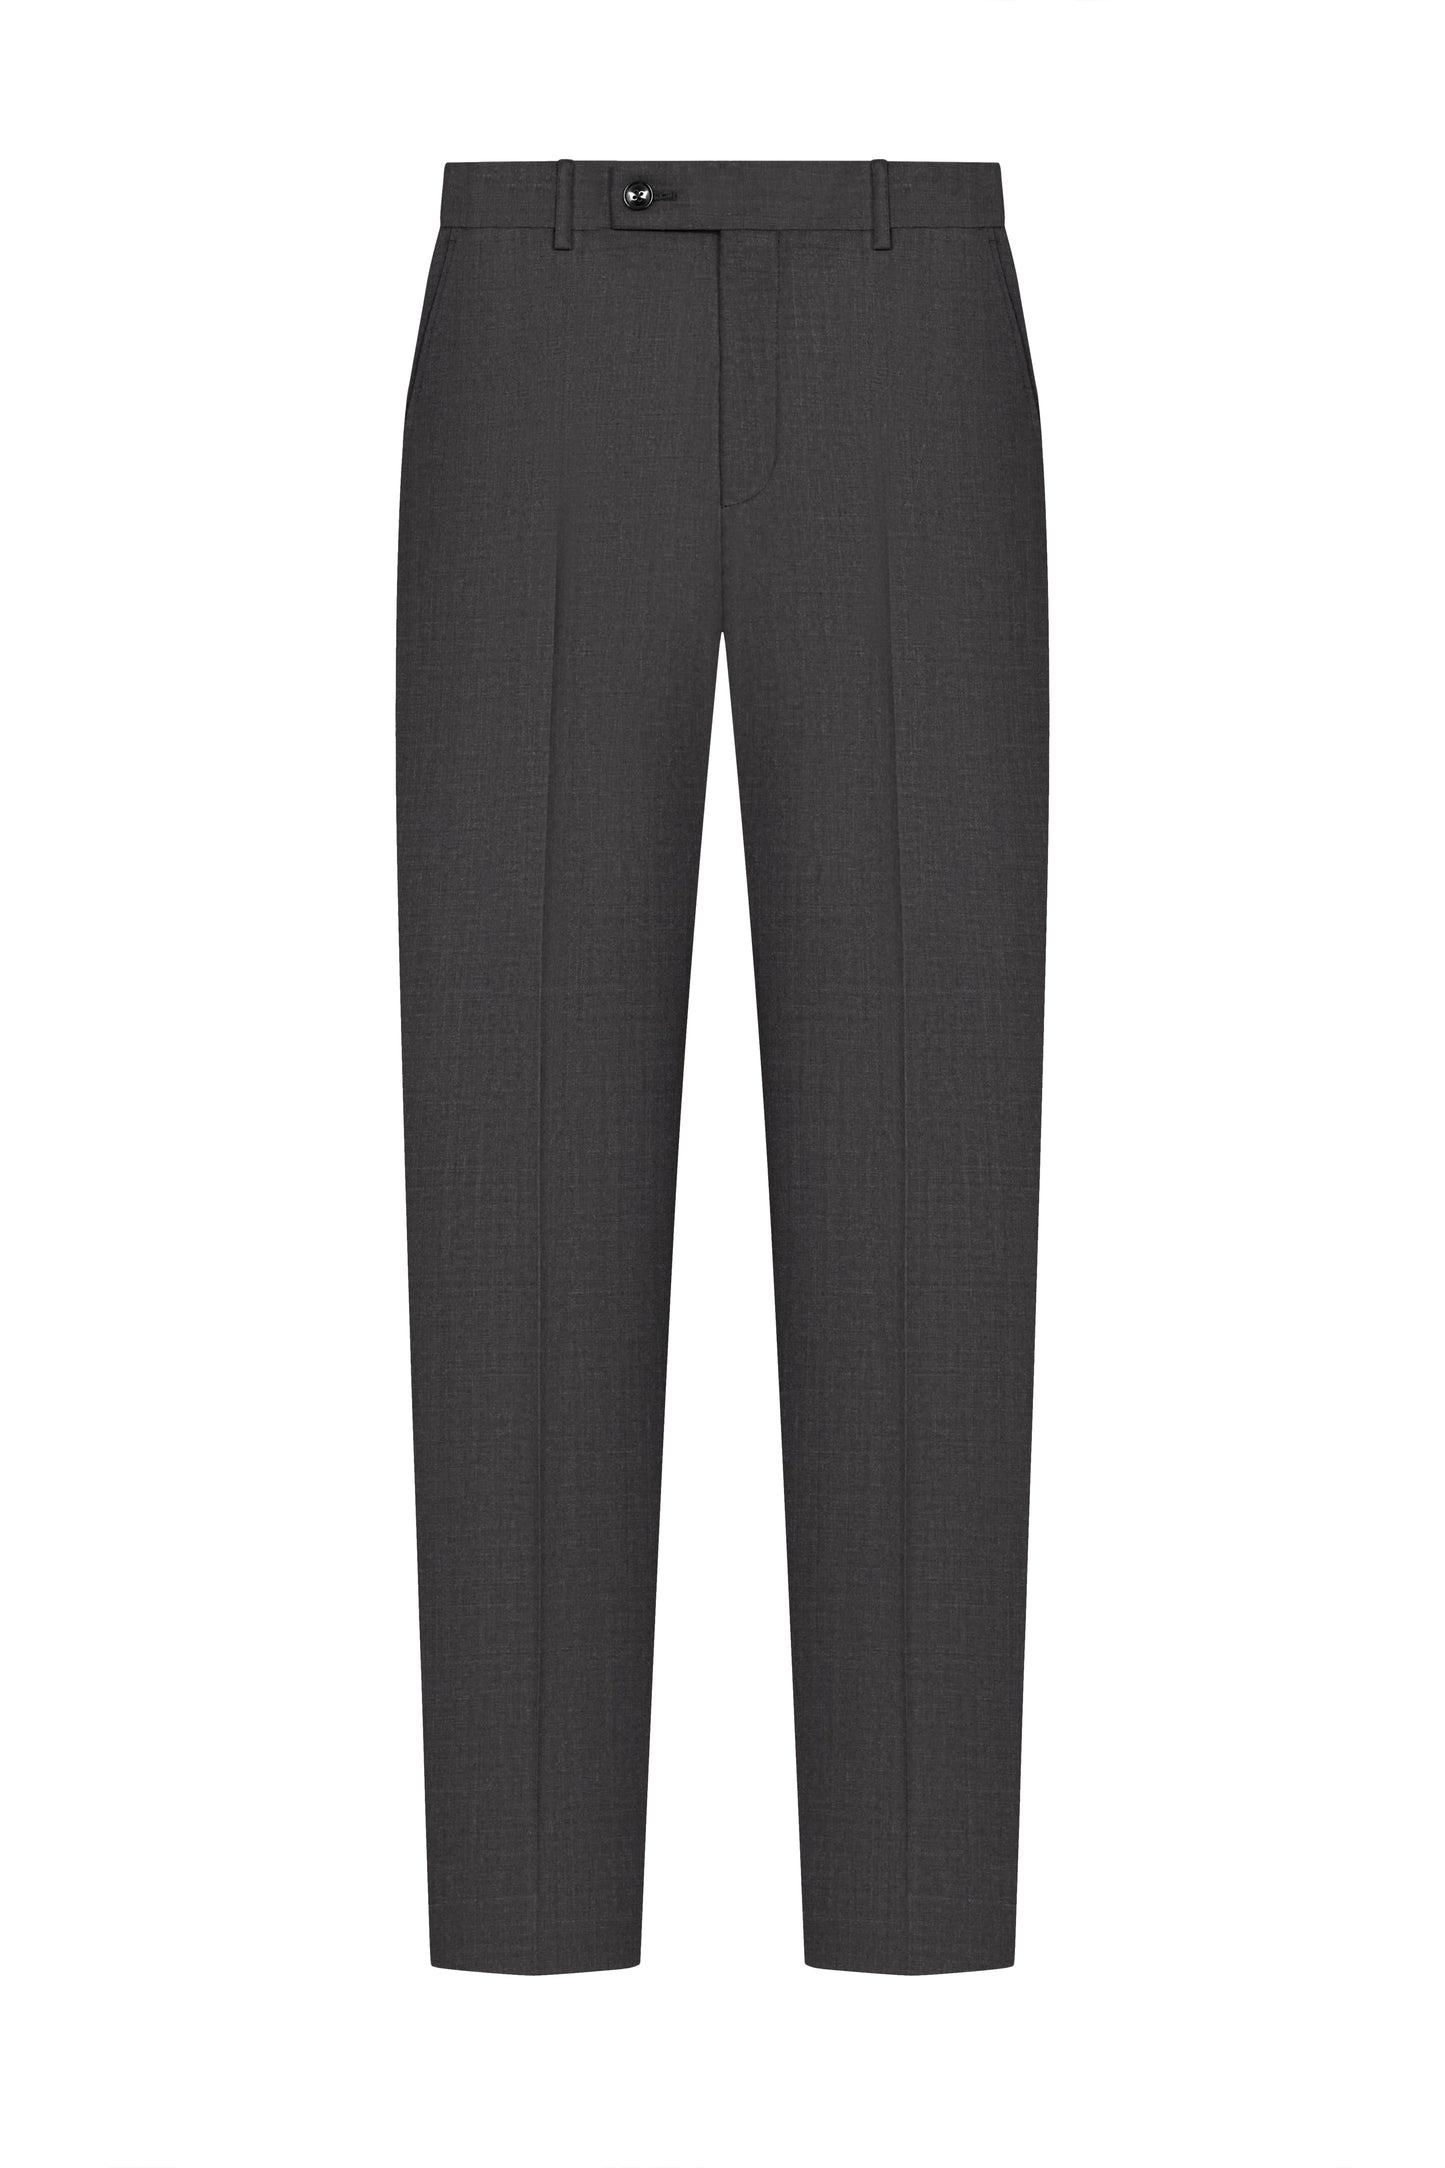 Charcoal Grey Plain Weave Suit